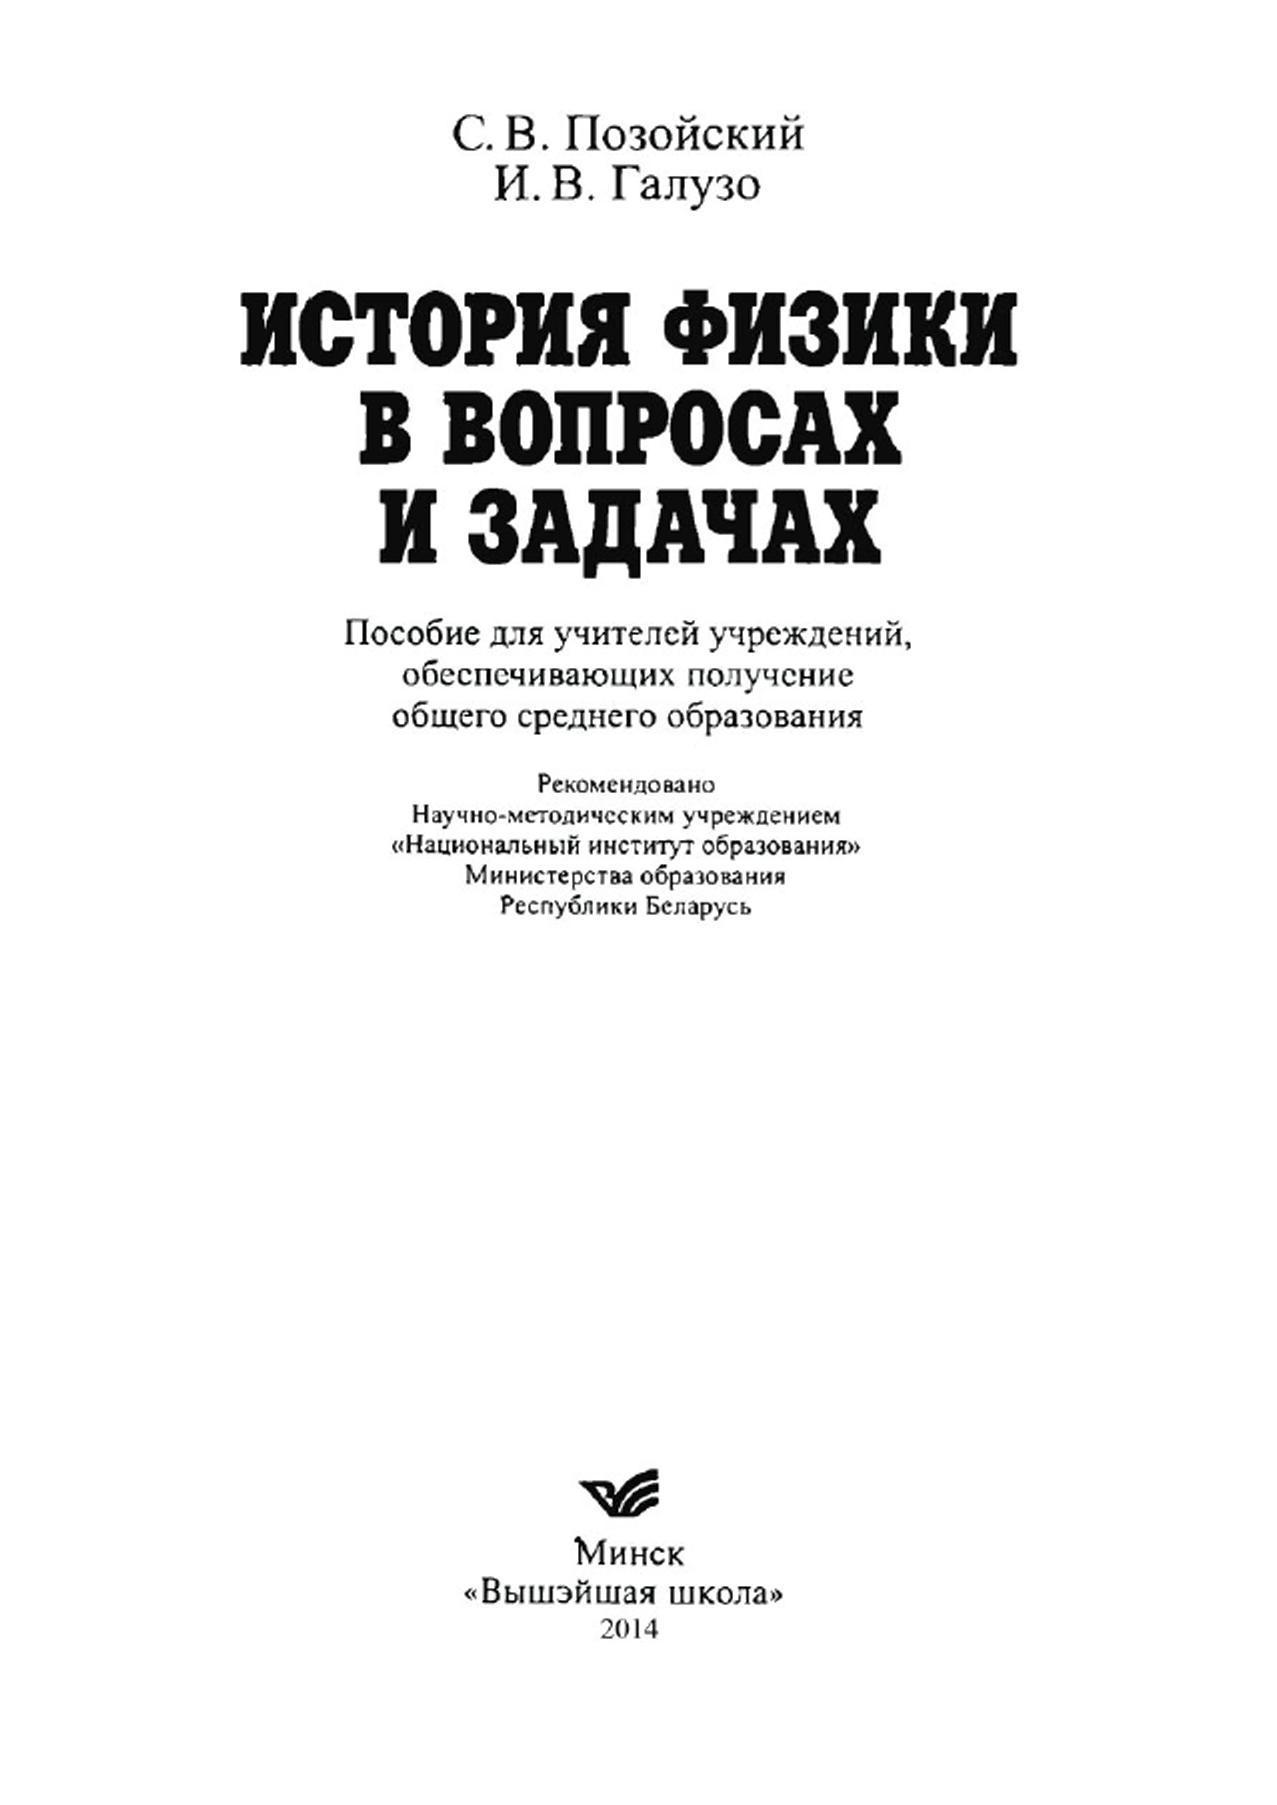 История физики в вопросах и задачах, Пособие для учителей, Позойский С.В., Галузо И.В., 2005